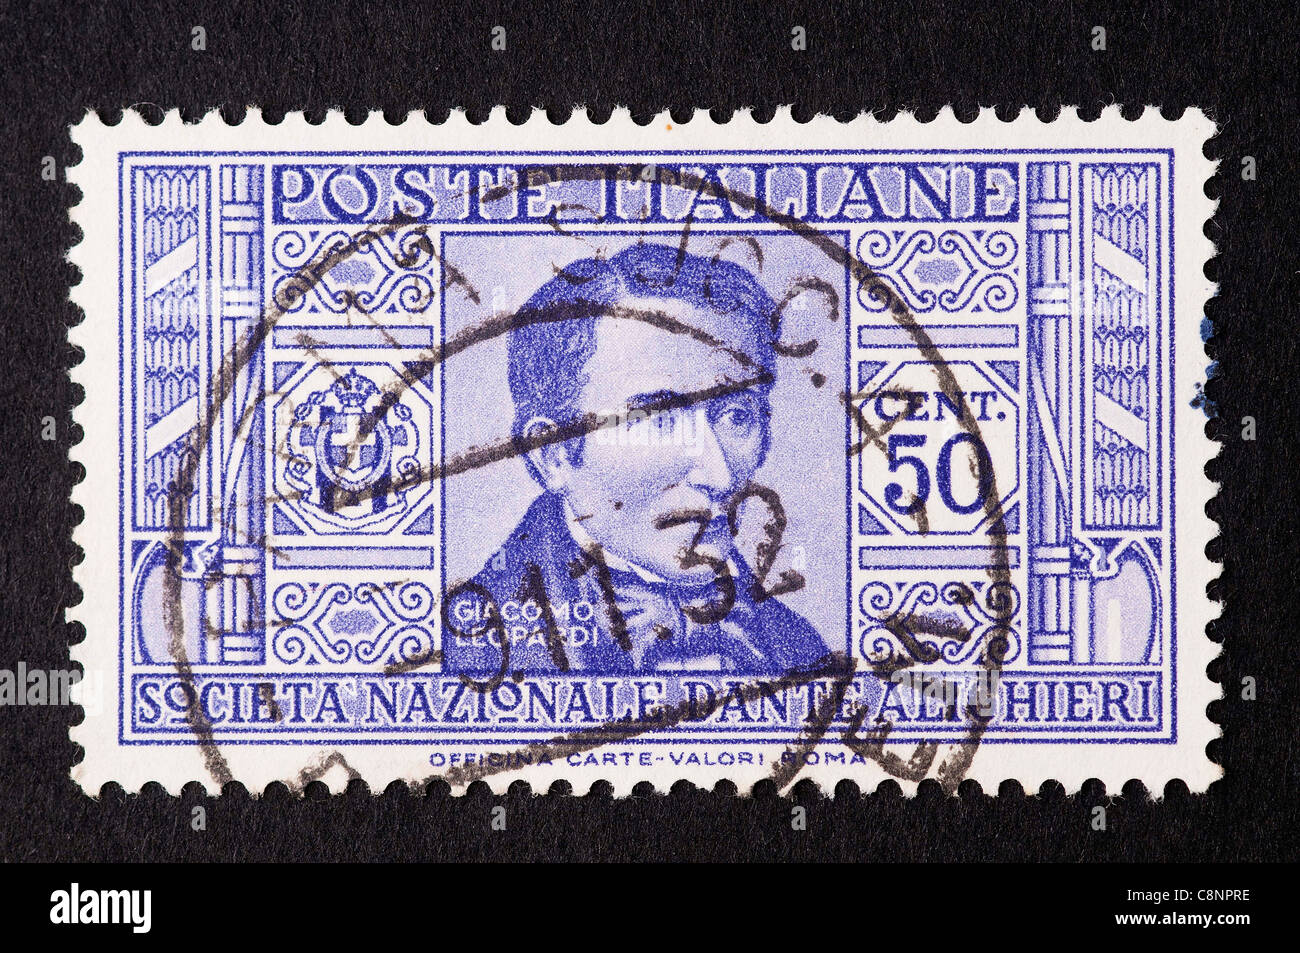 Giacomo Leopardi poet in an old italian Kingdom stamp Stock Photo